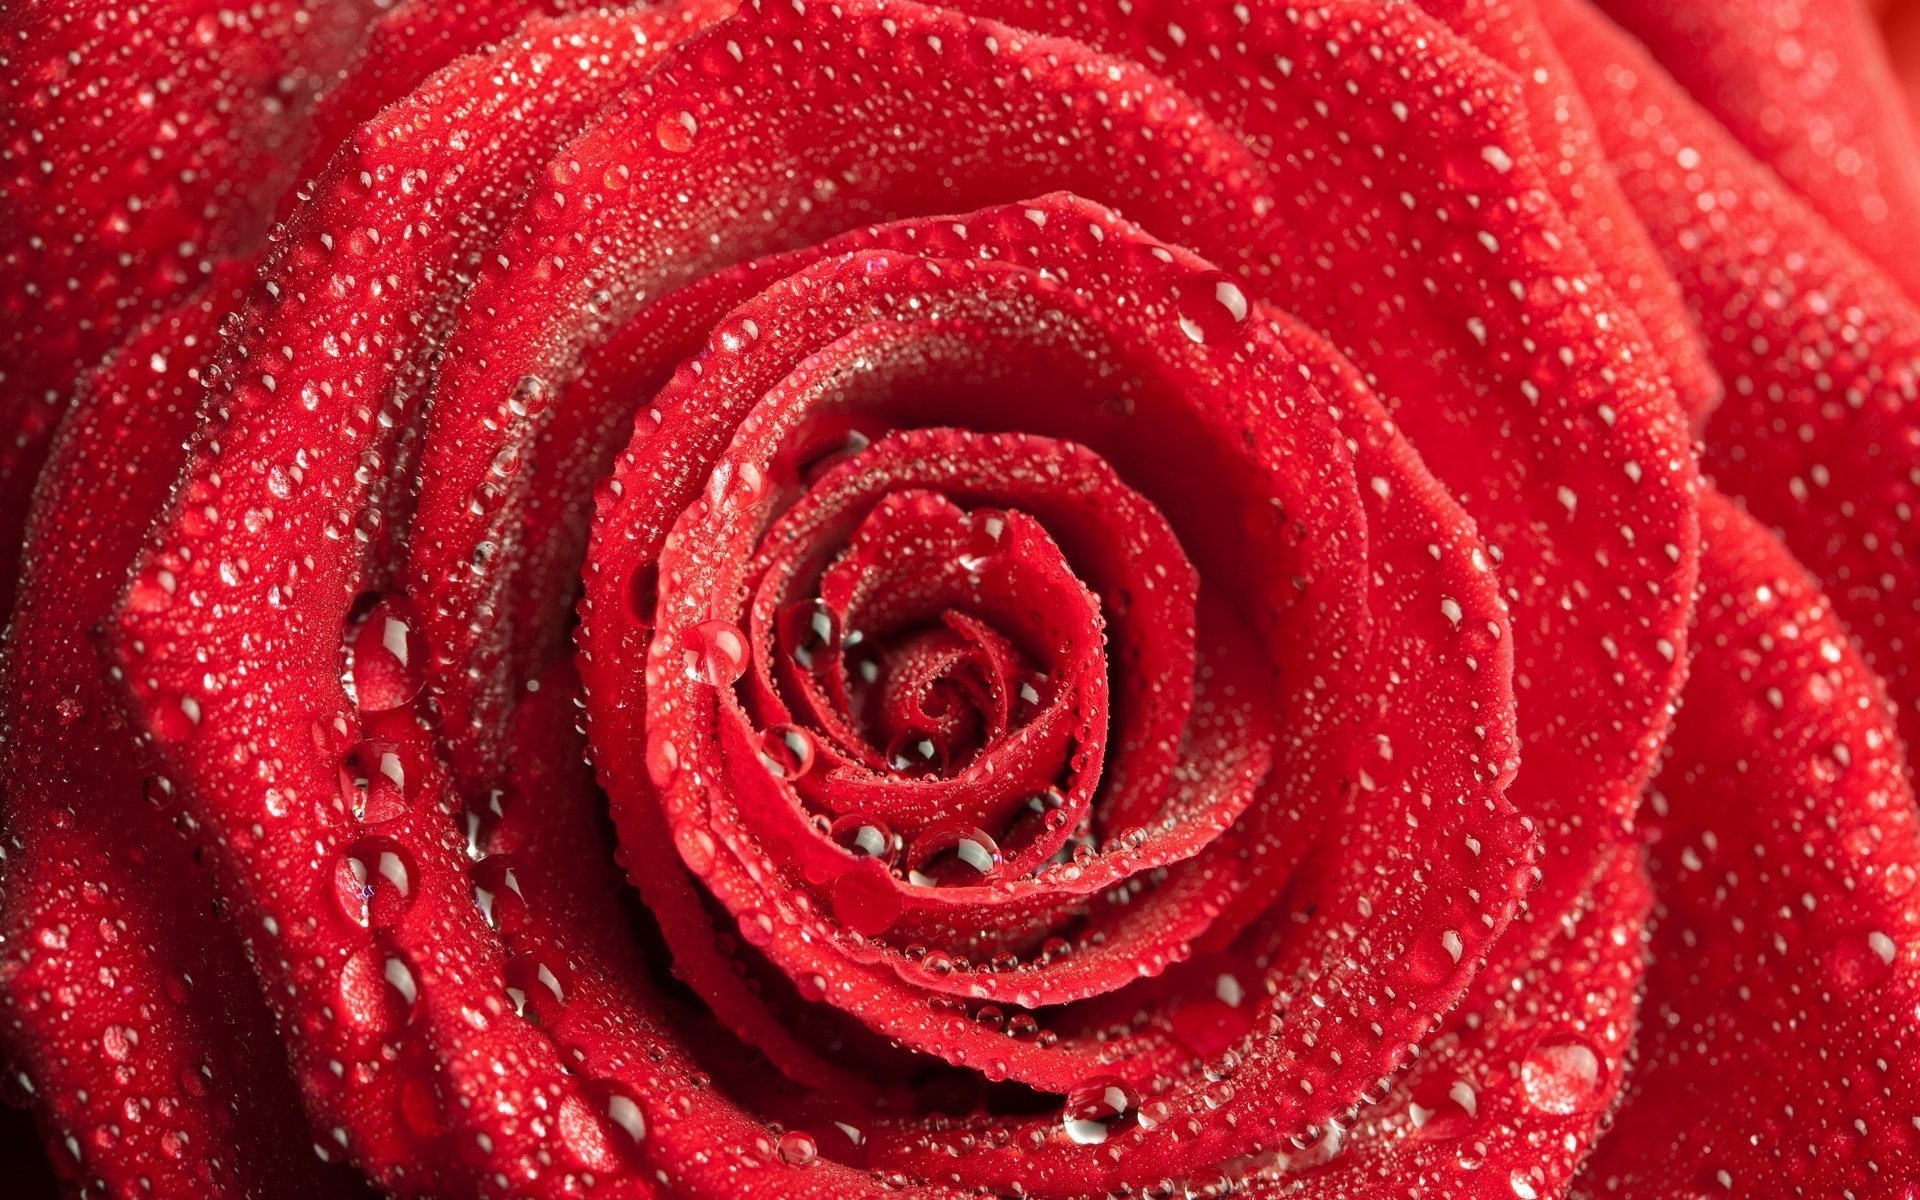 Красная роза с каплями